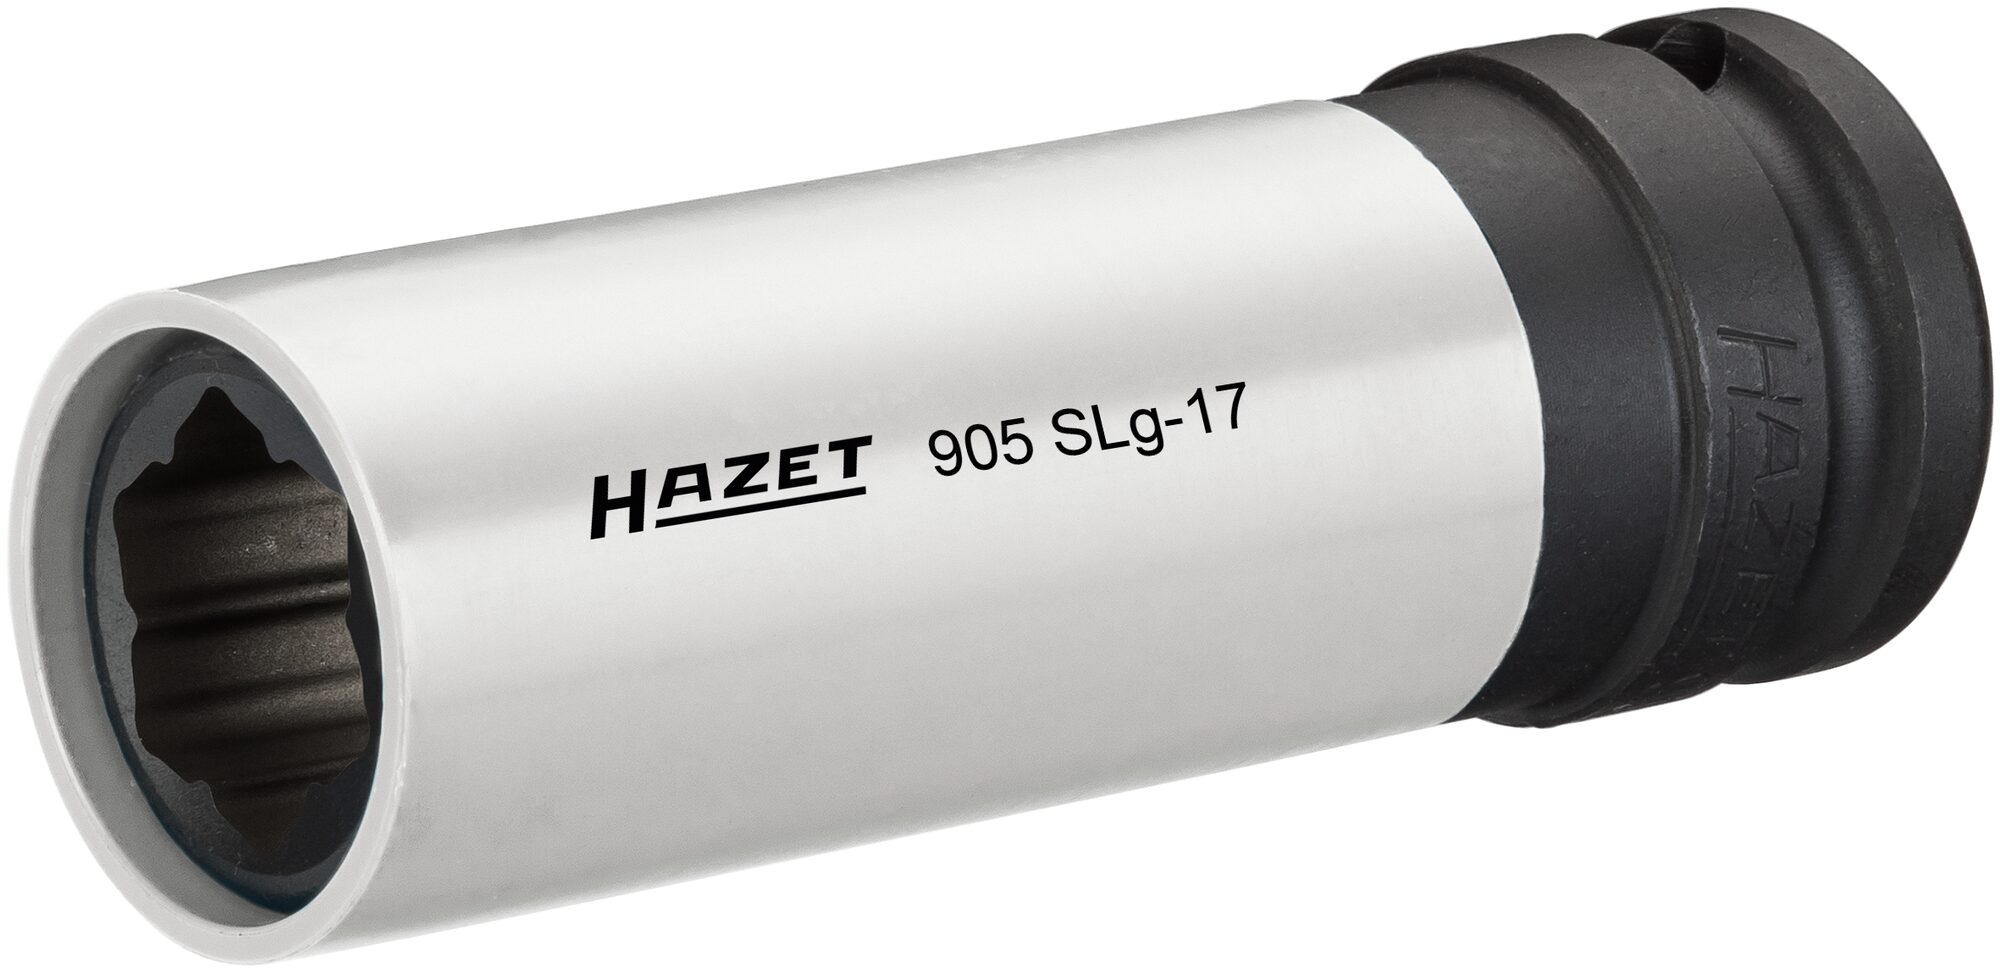 HAZET Schlag-, Maschinenschrauber Steckschlüsseleinsatz · Hybrid-Sonderprofil 905SLG-17 · Vierkant hohl 12,5 mm (1/2 Zoll) · Radschrauben Hybrid Sonderprofil · 17 mm